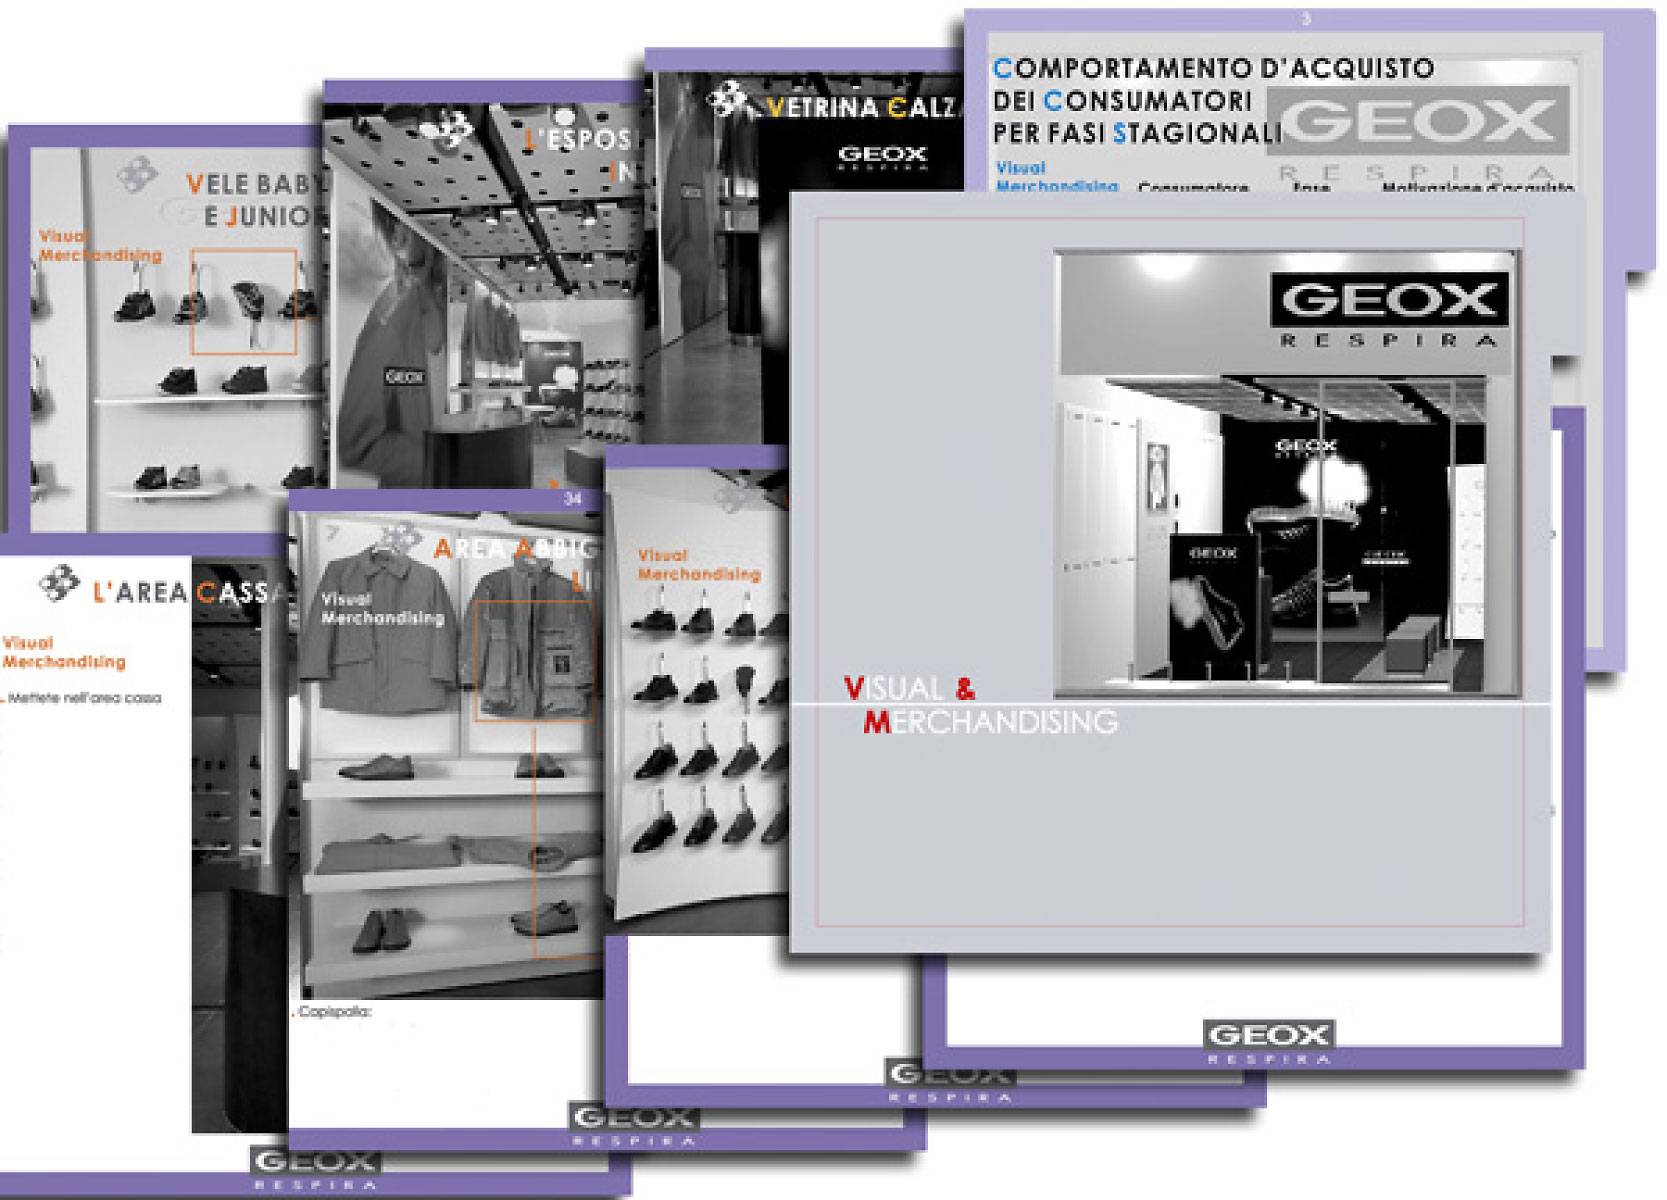 BVC, Geox visual merchandising